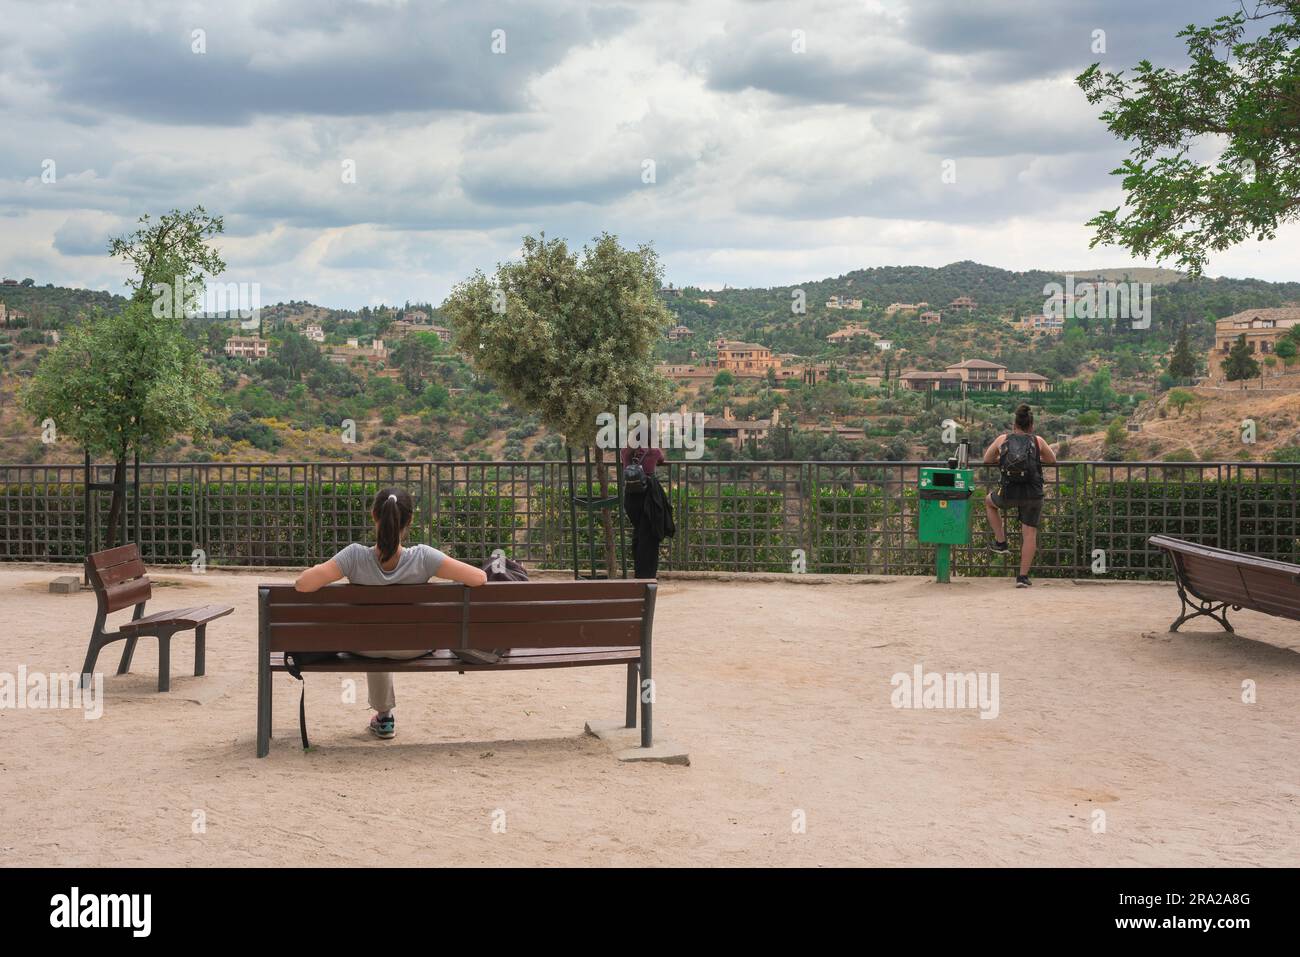 Weibliche Einzelreise, Rückansicht einer jungen Frau, die allein auf einer Bank sitzt und einen malerischen Aussichtspunkt, Spanien, Europa, betrachtet Stockfoto